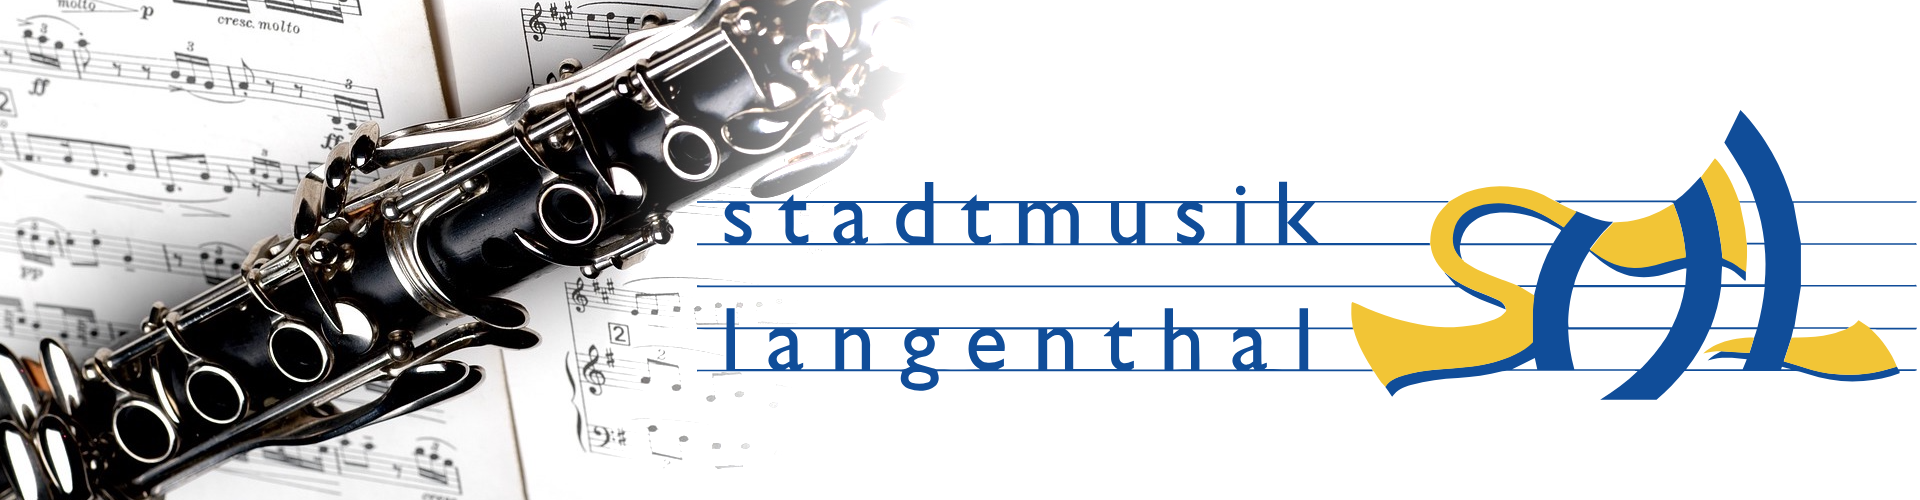 Stadtmusik Langenthal